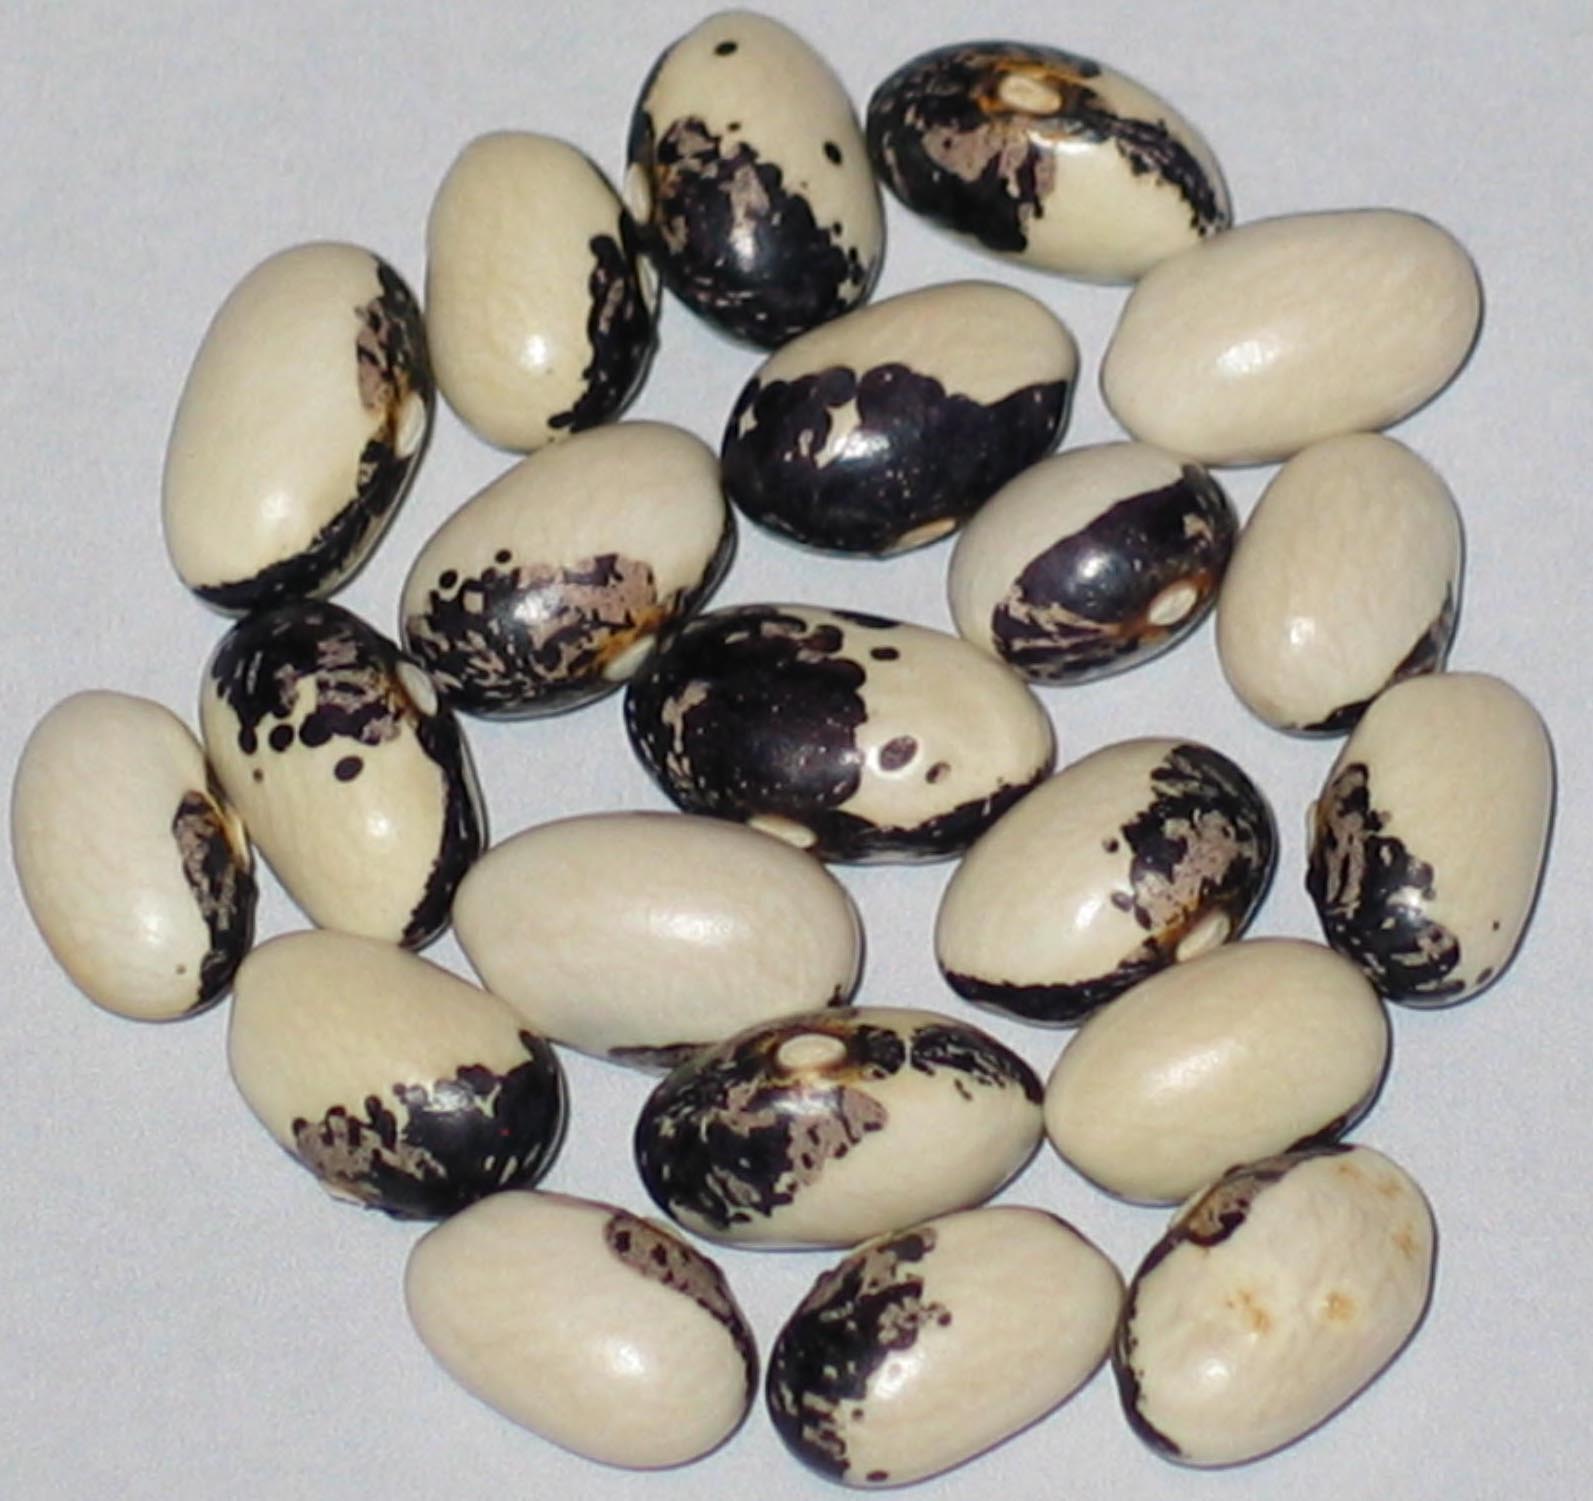 image of Cannellino Malato Segregation beans